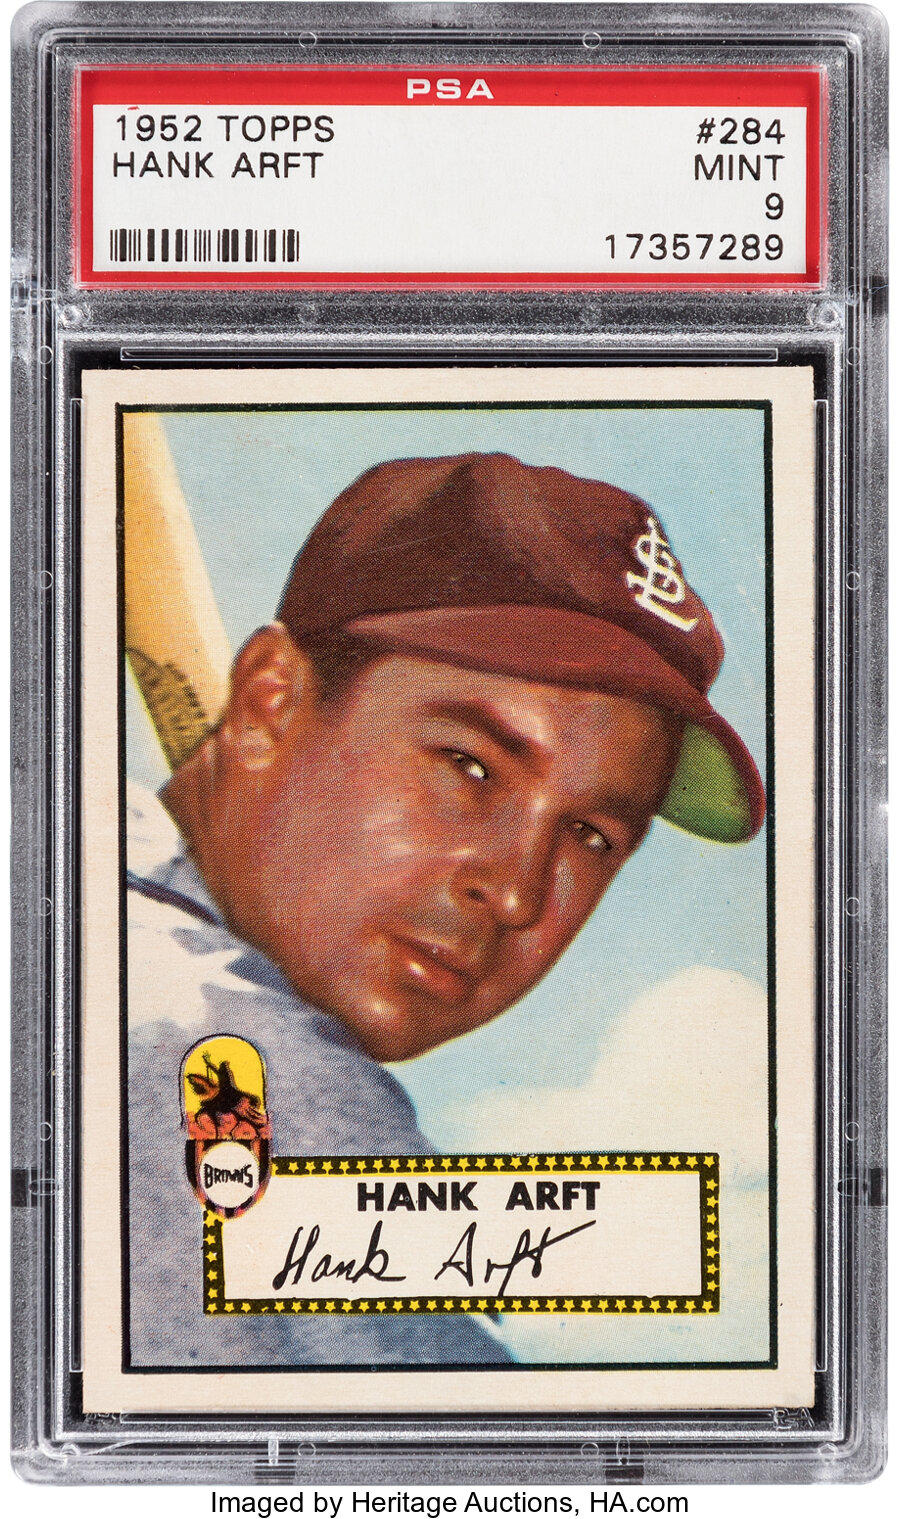 1952 Topps Hank Arft #284 PSA Mint 9 - None Higher!